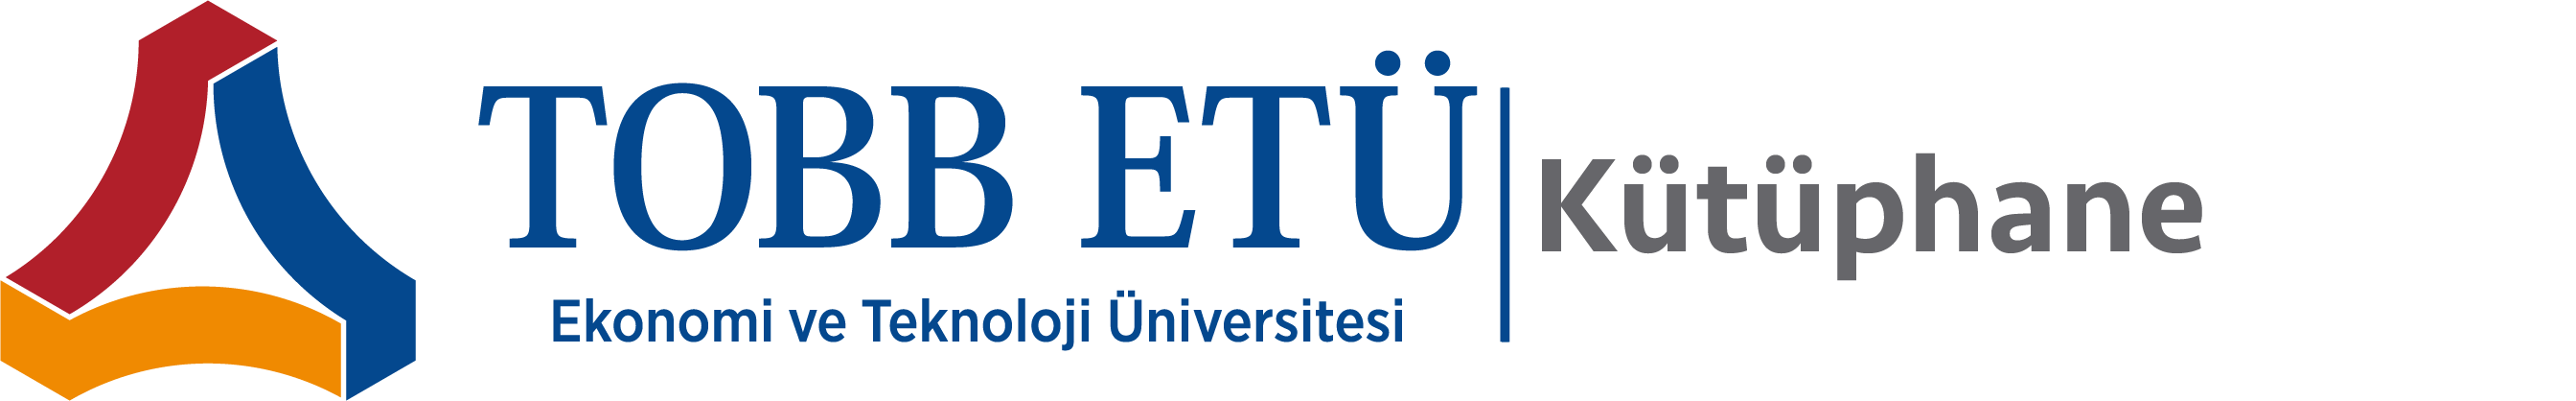 TOBB ETÜ - Ekonomi ve Teknoloji Üniversitesi